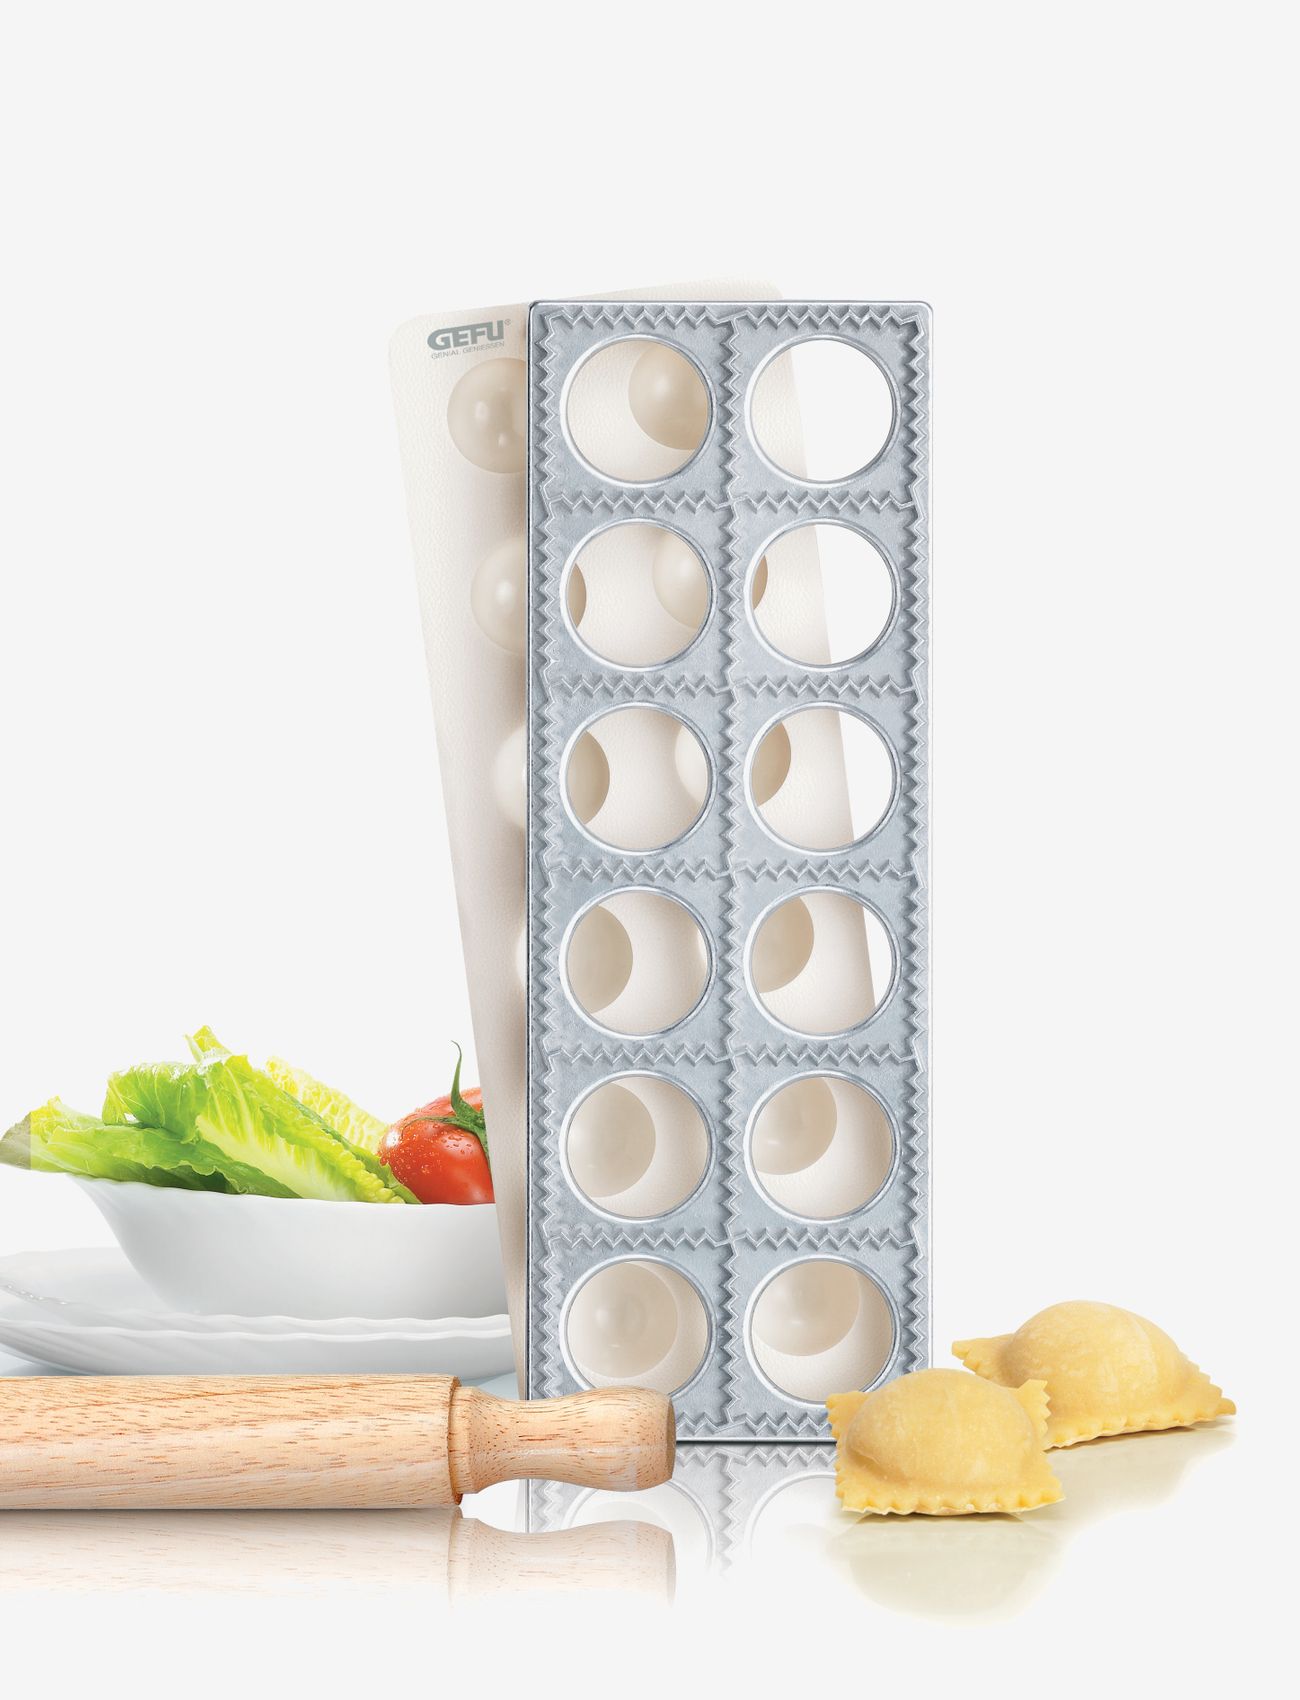 Gefu - Ravioli / Pasta-case maker TASCA, 3 pcs. - makaronų gaminimo aparatai ir priedai - white - 0